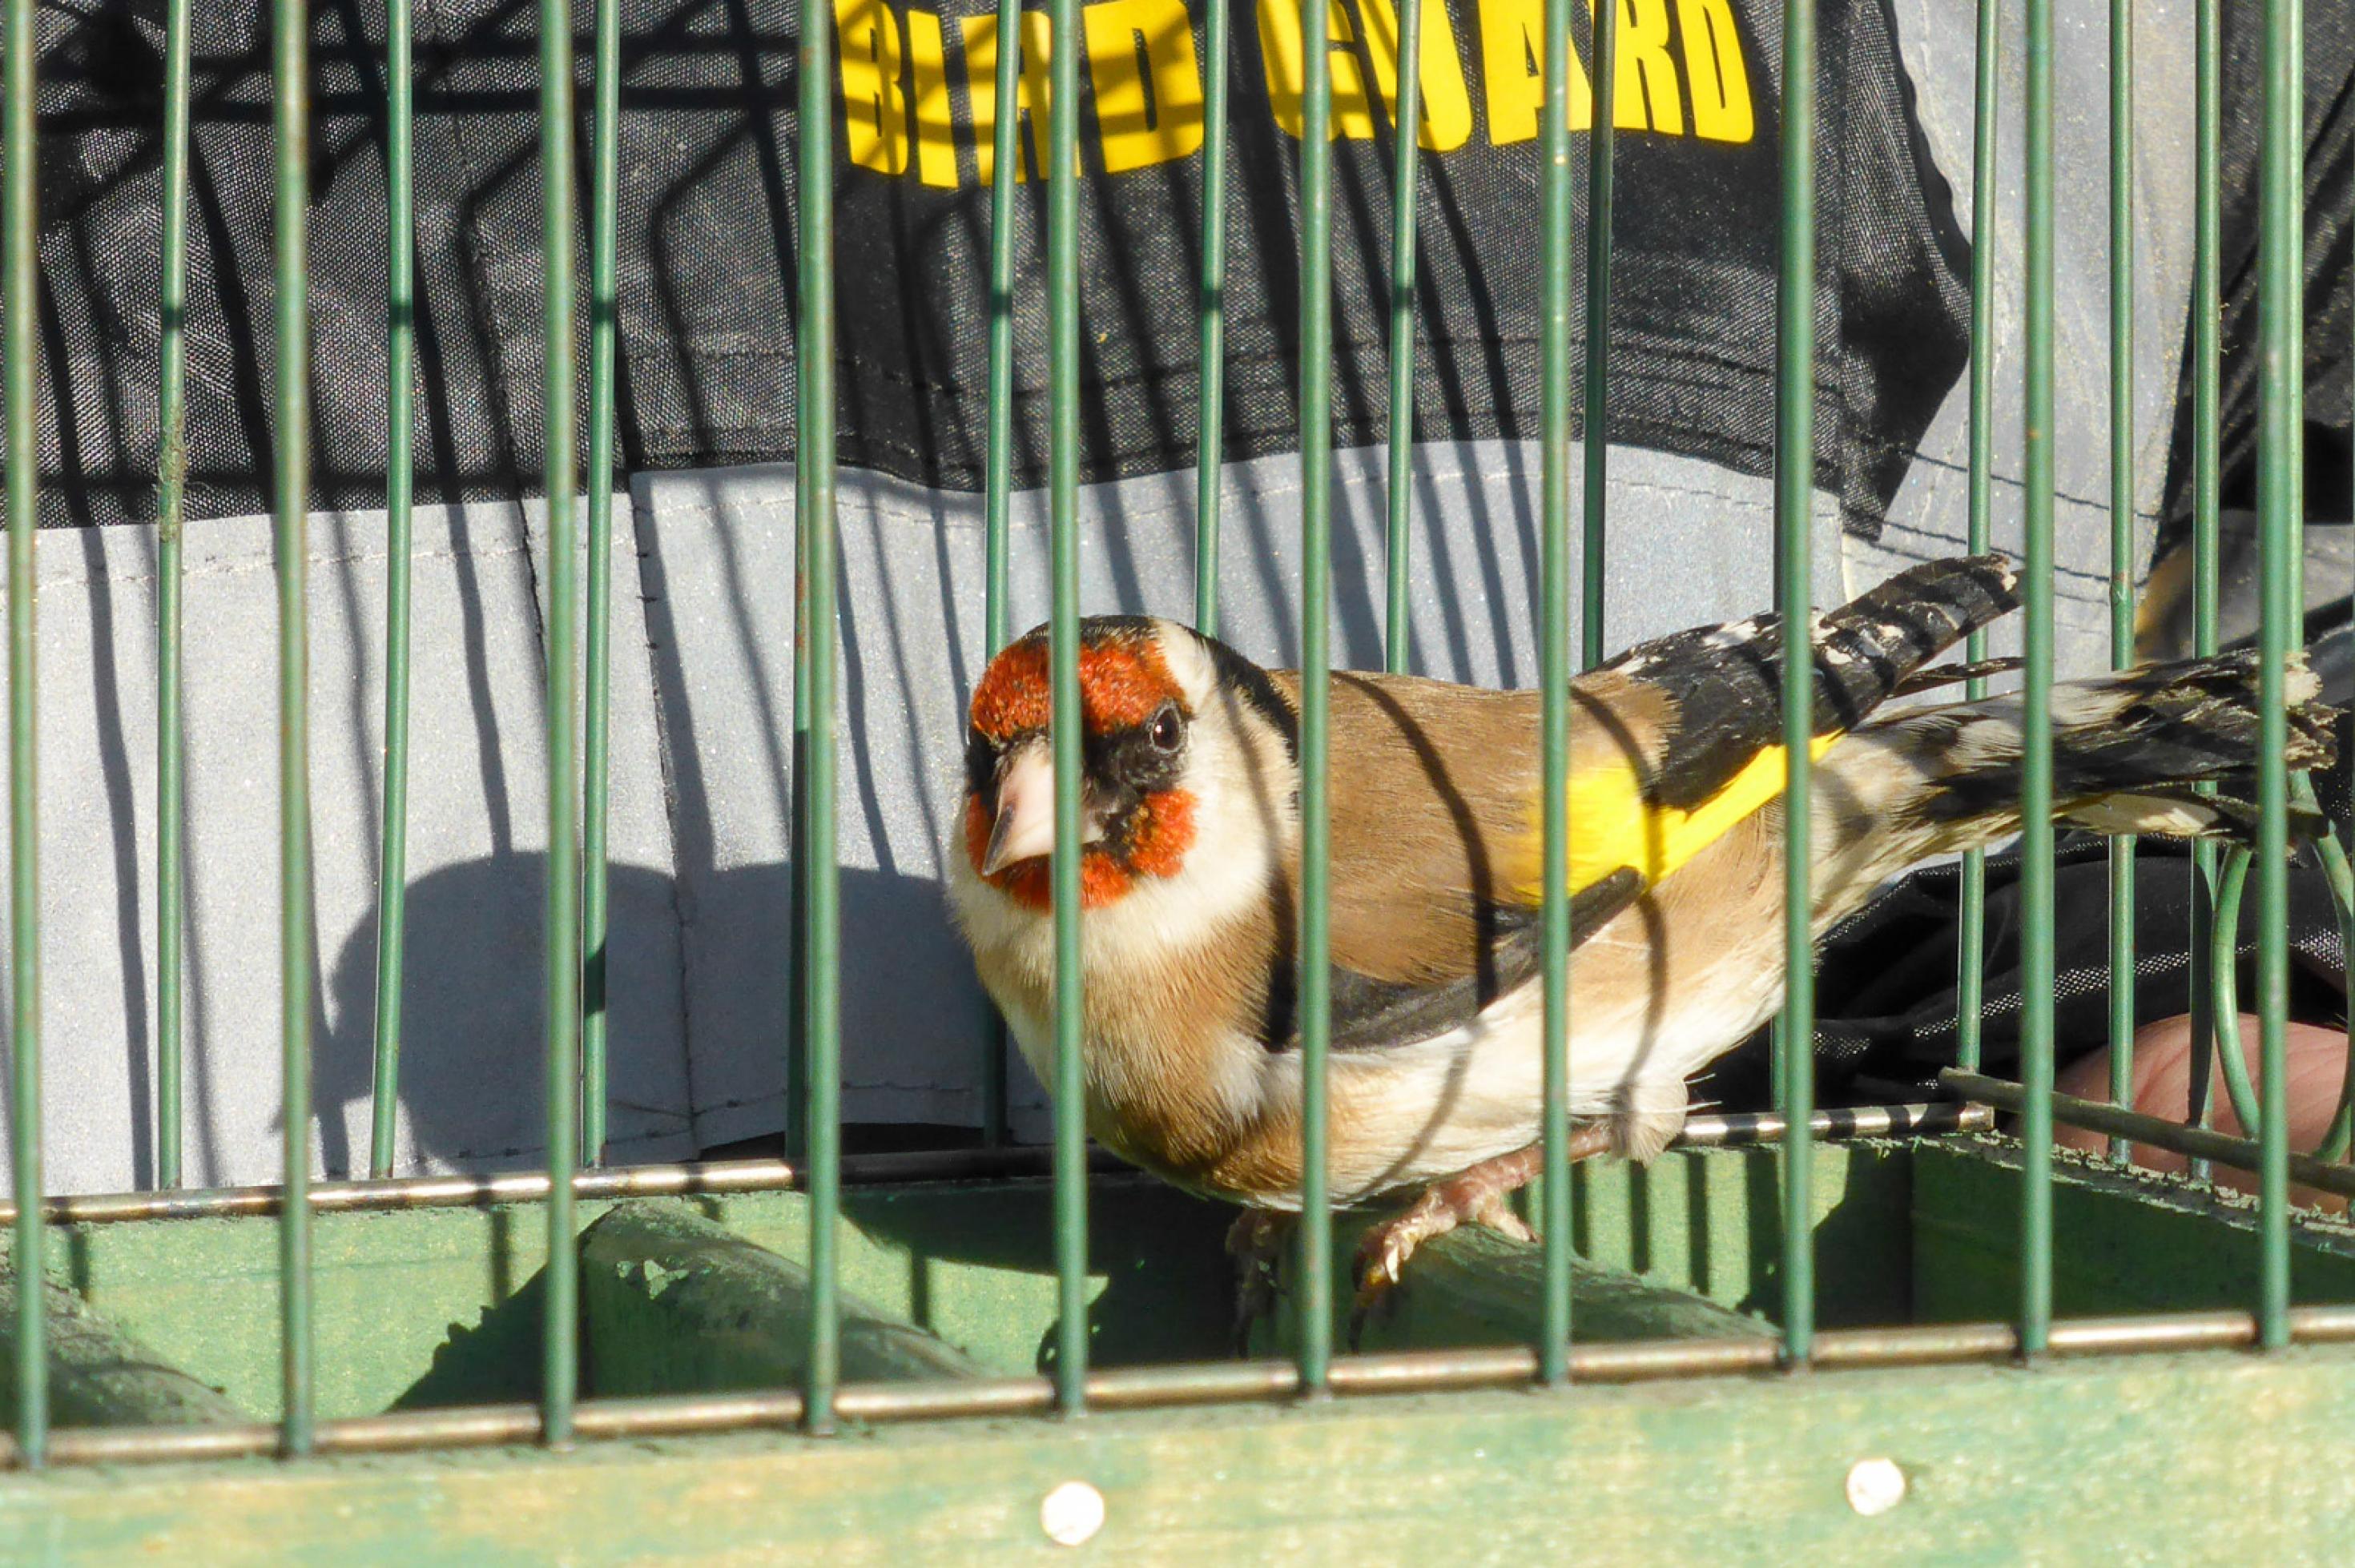 Ein Vogel mit rotem Gesicht, schwarzer Maske, weißem Hals und braunen Flügeln mit gelben Streifen sitzt in einem Käfig.